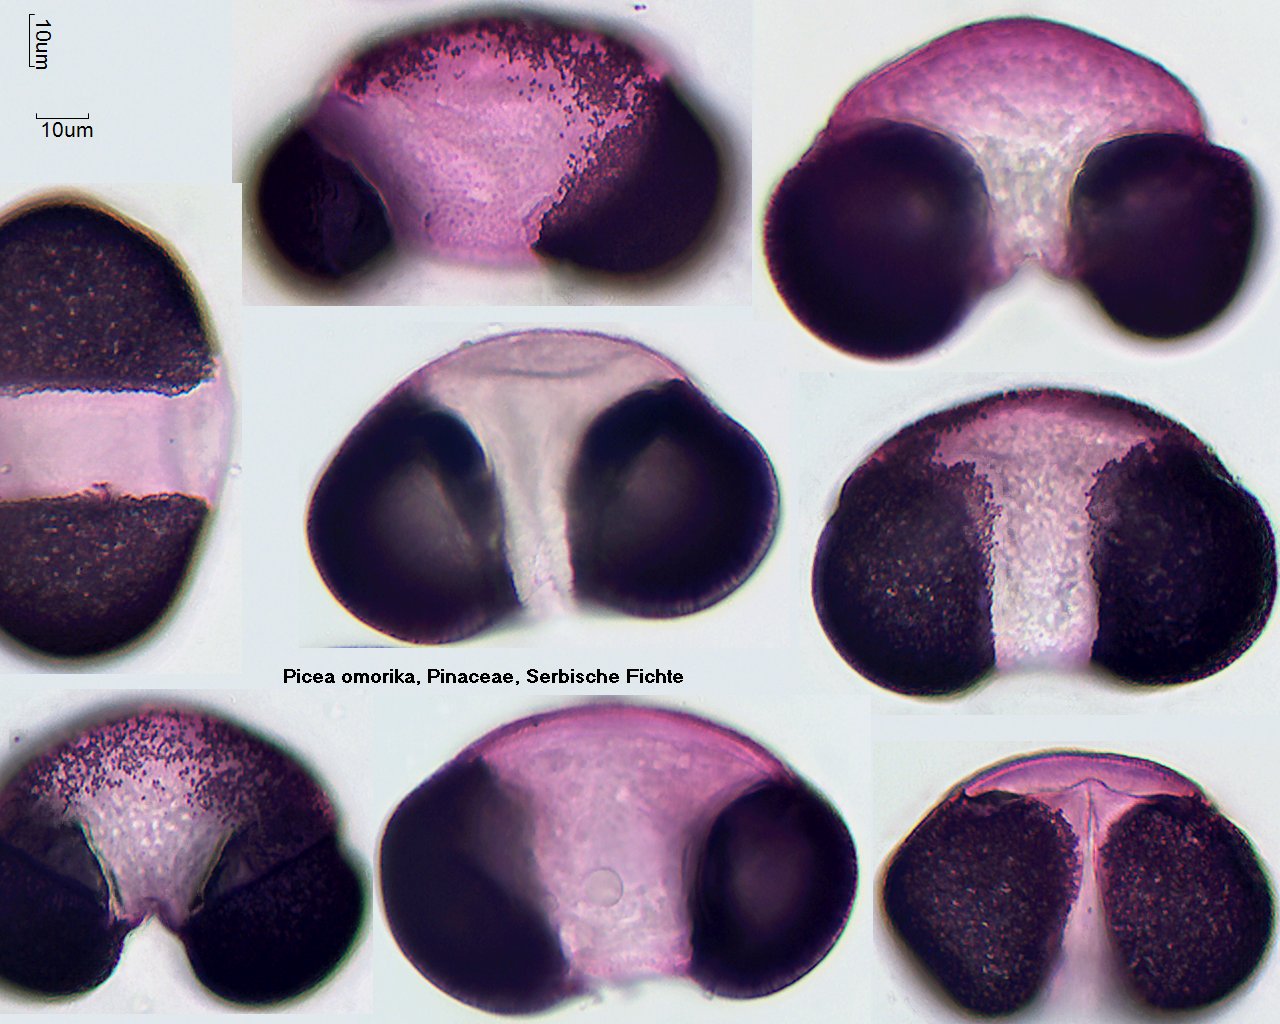 Pollen von Picea ormorika